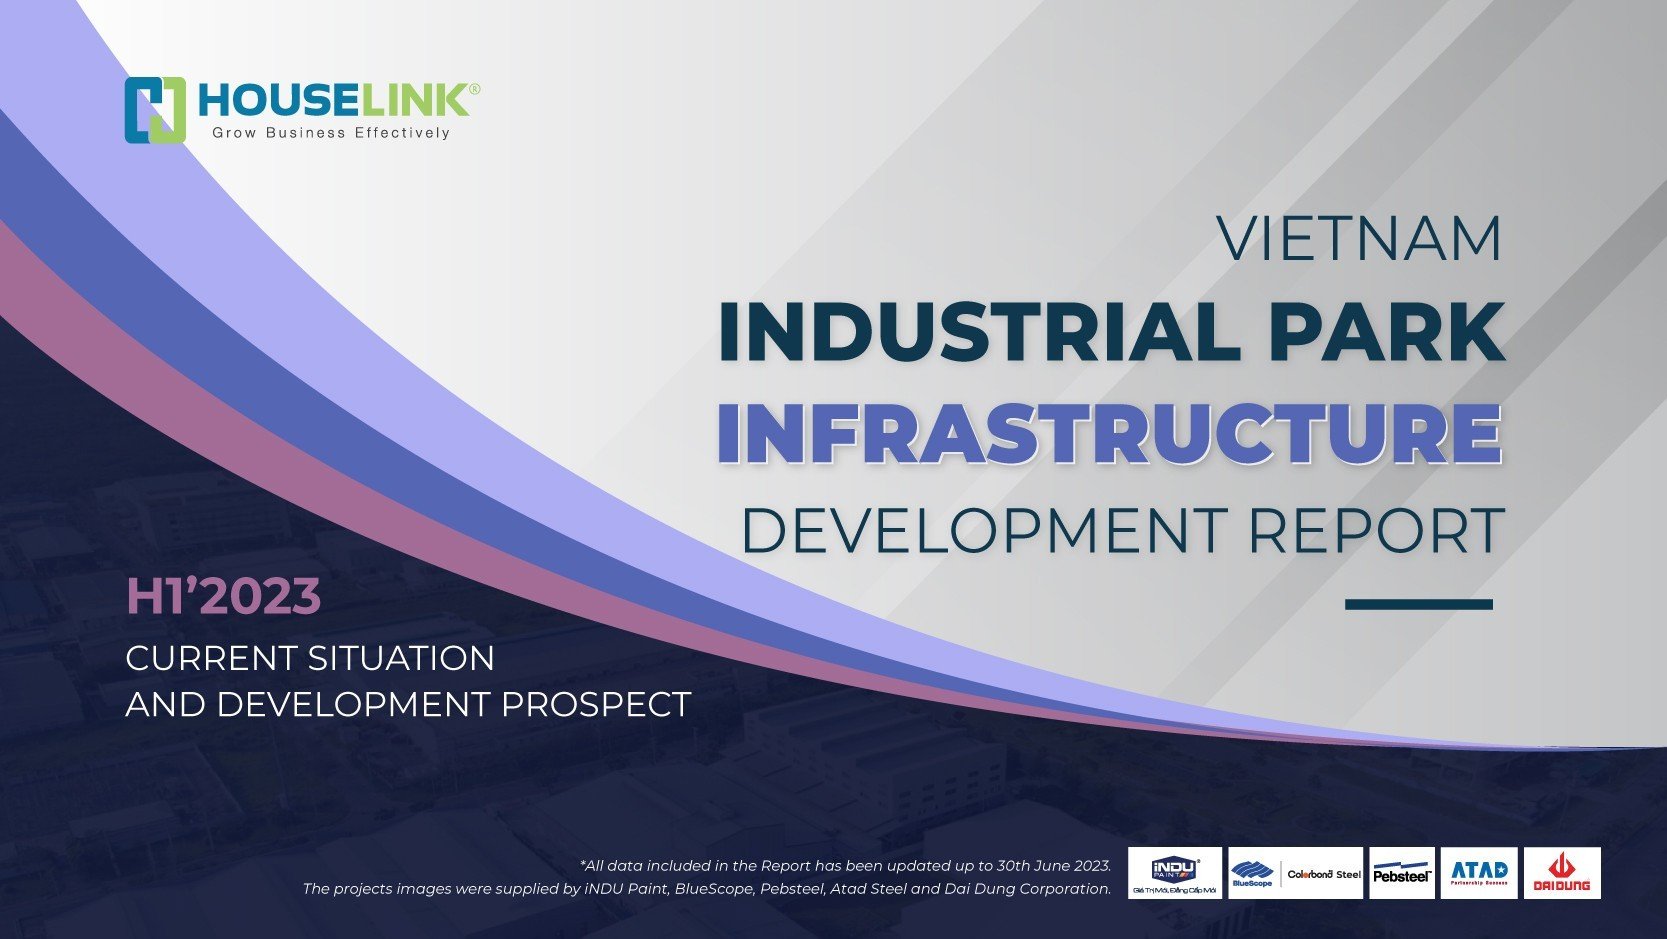 Vietnam Industrial Park Infrastructure Development Report H1'2023 